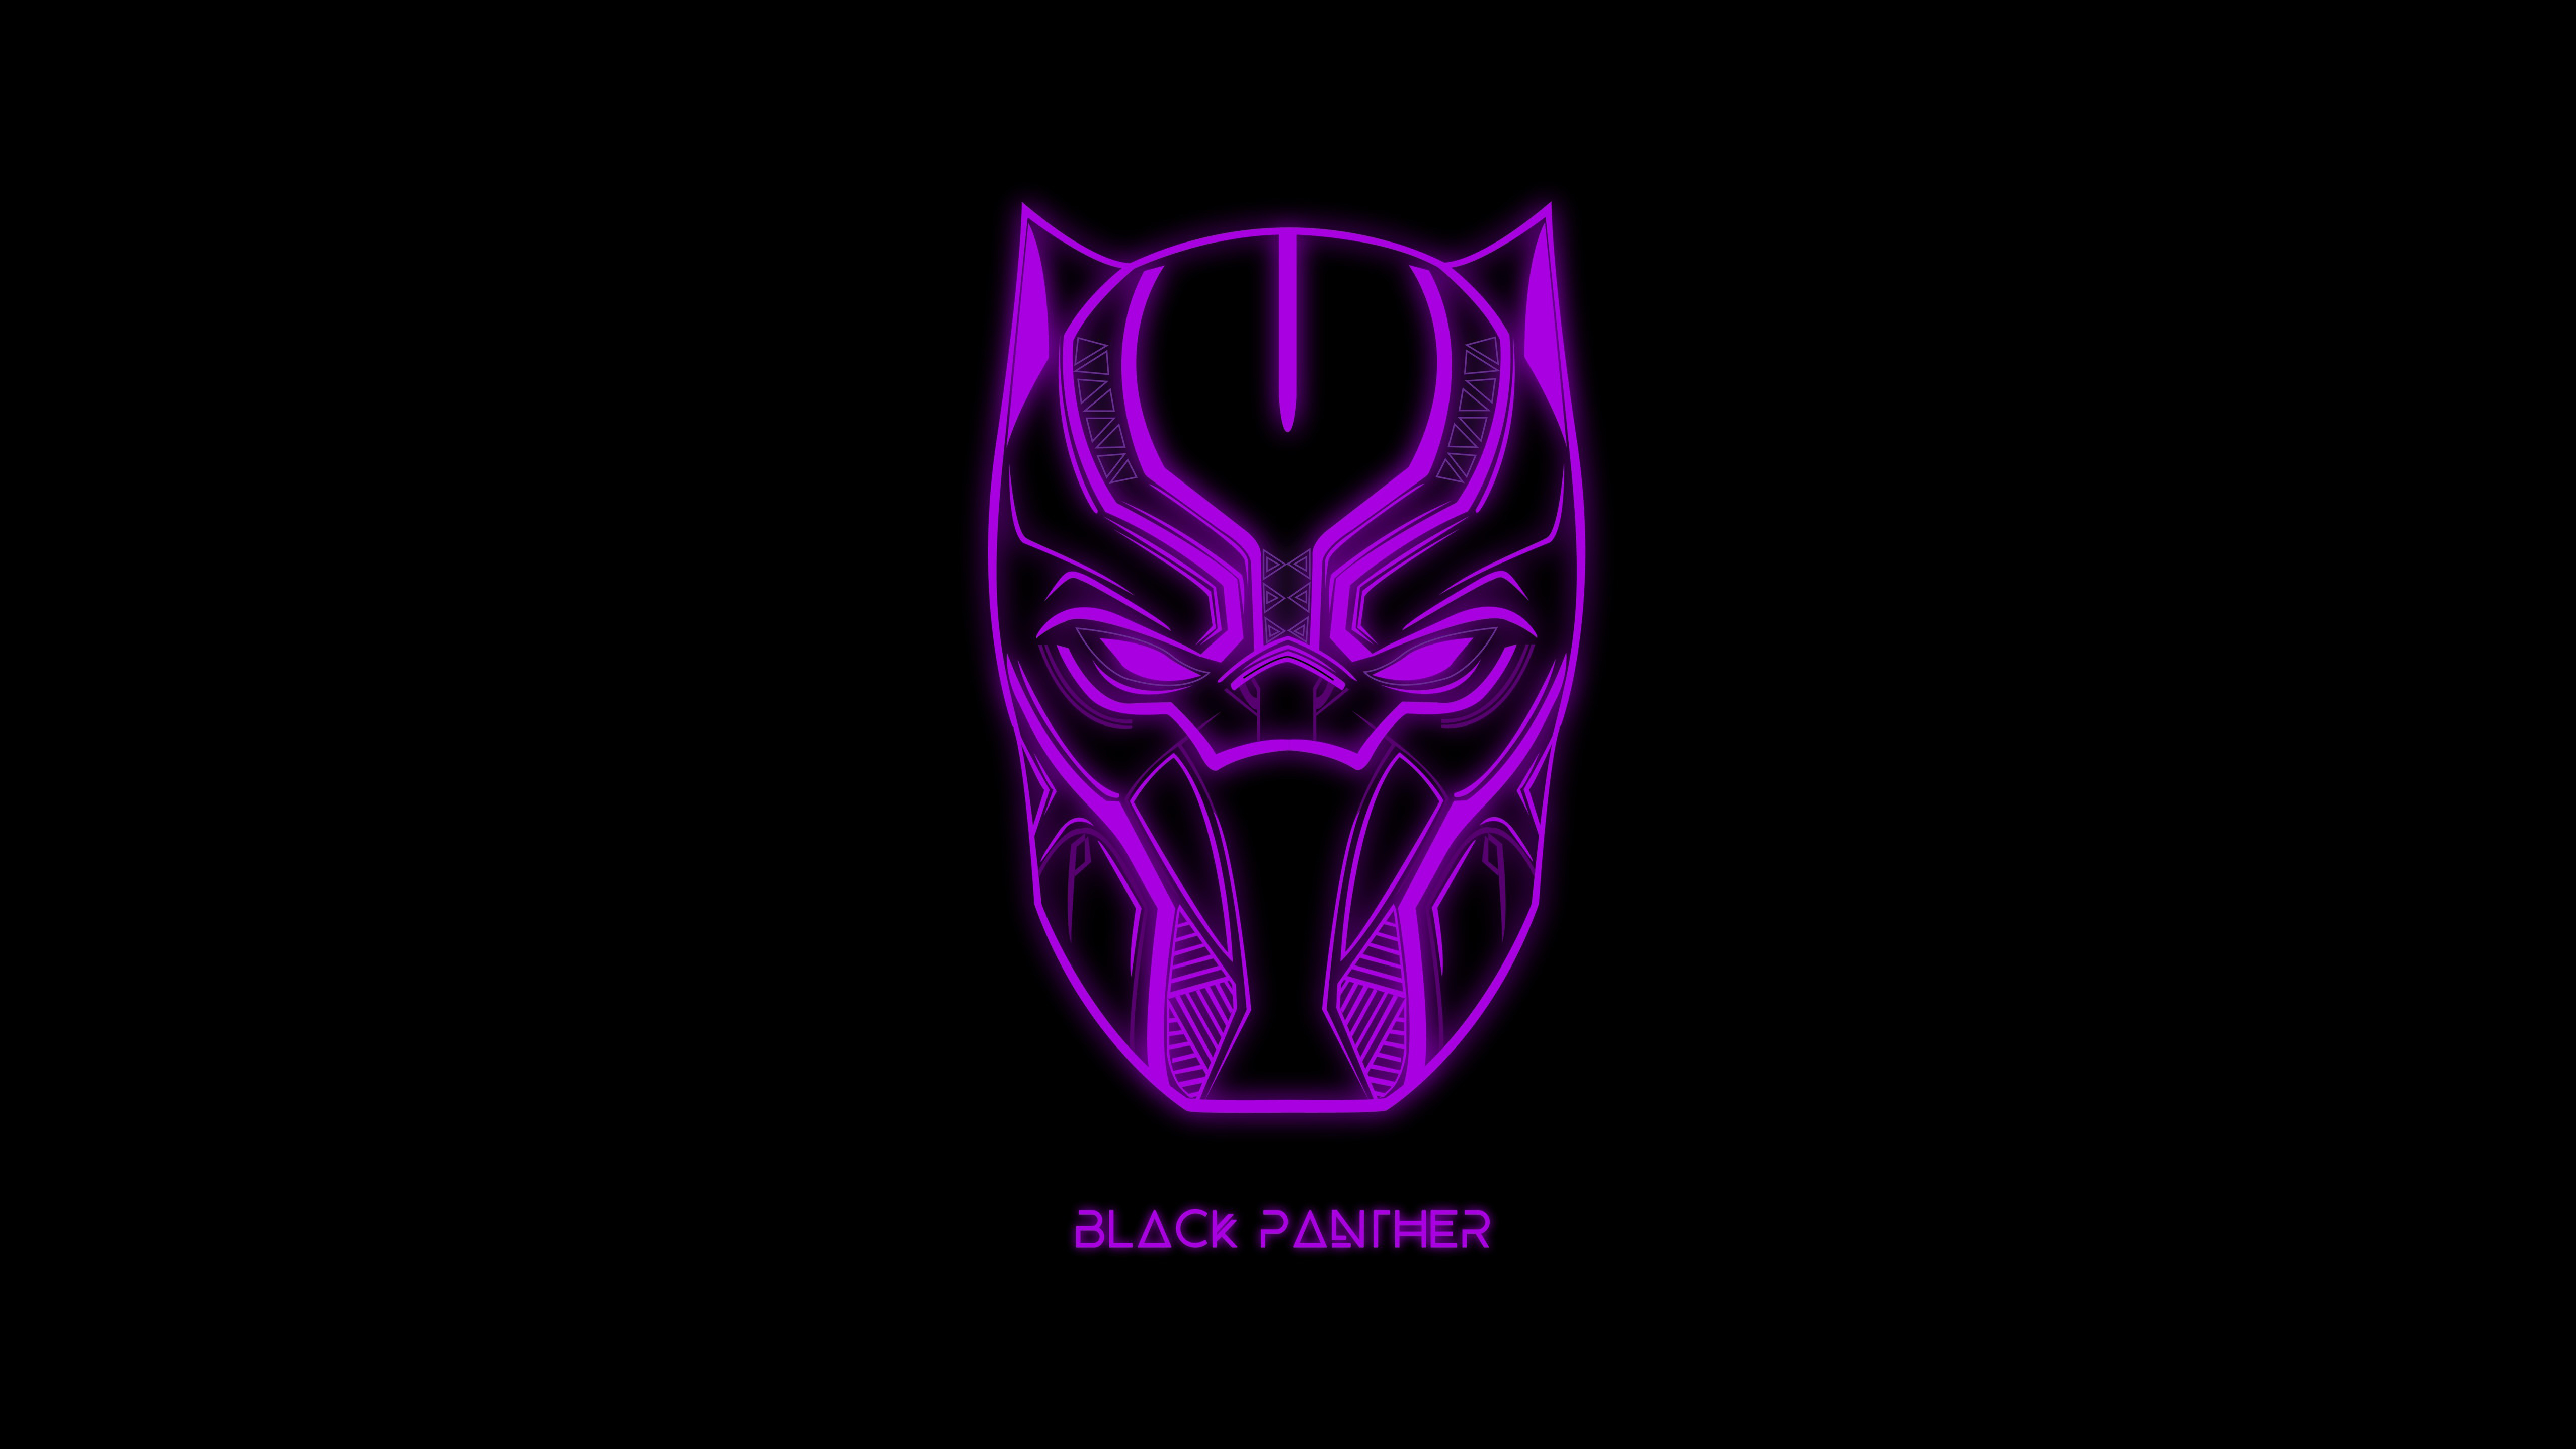 Black Panther Minimal Dark Artwork 5K